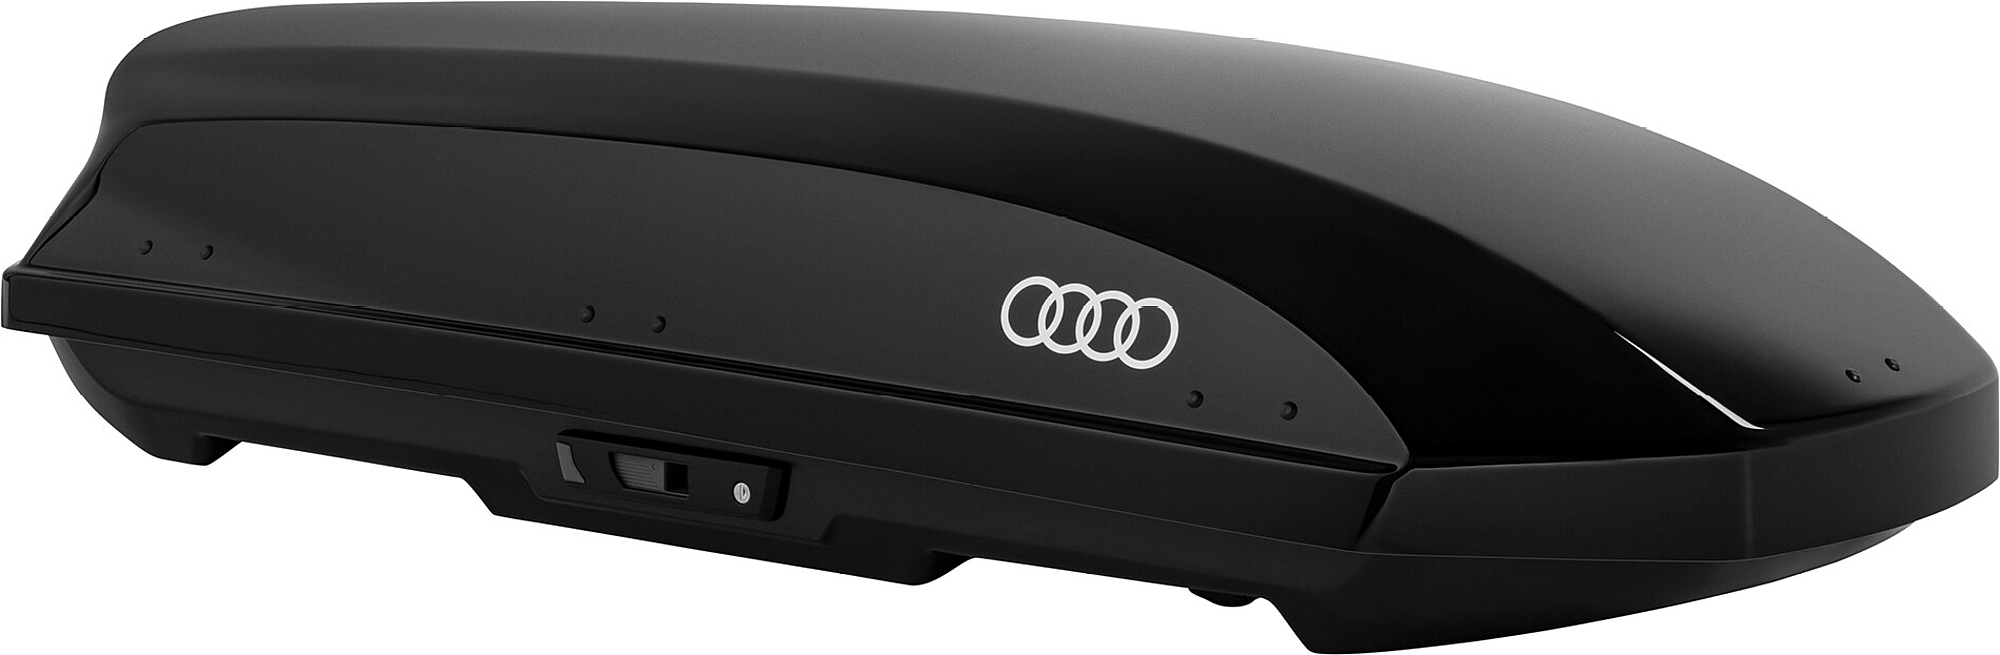 Audi - Coffre de toit, 310 L, noir brillant